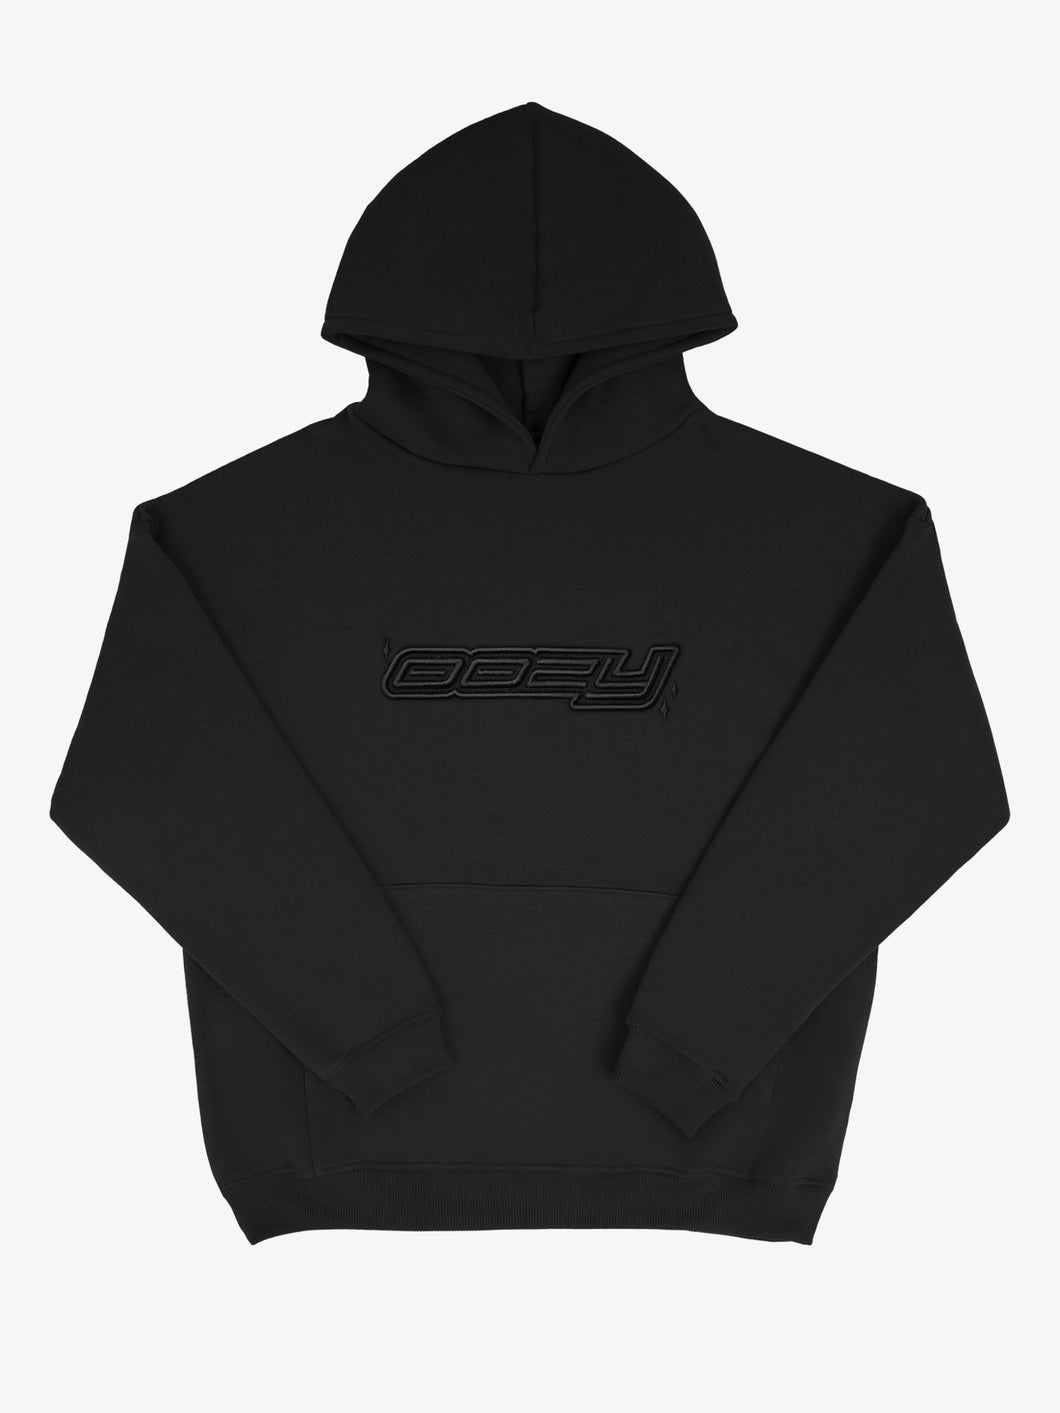 OOZY 3D Logo Oversize Black Hoodie